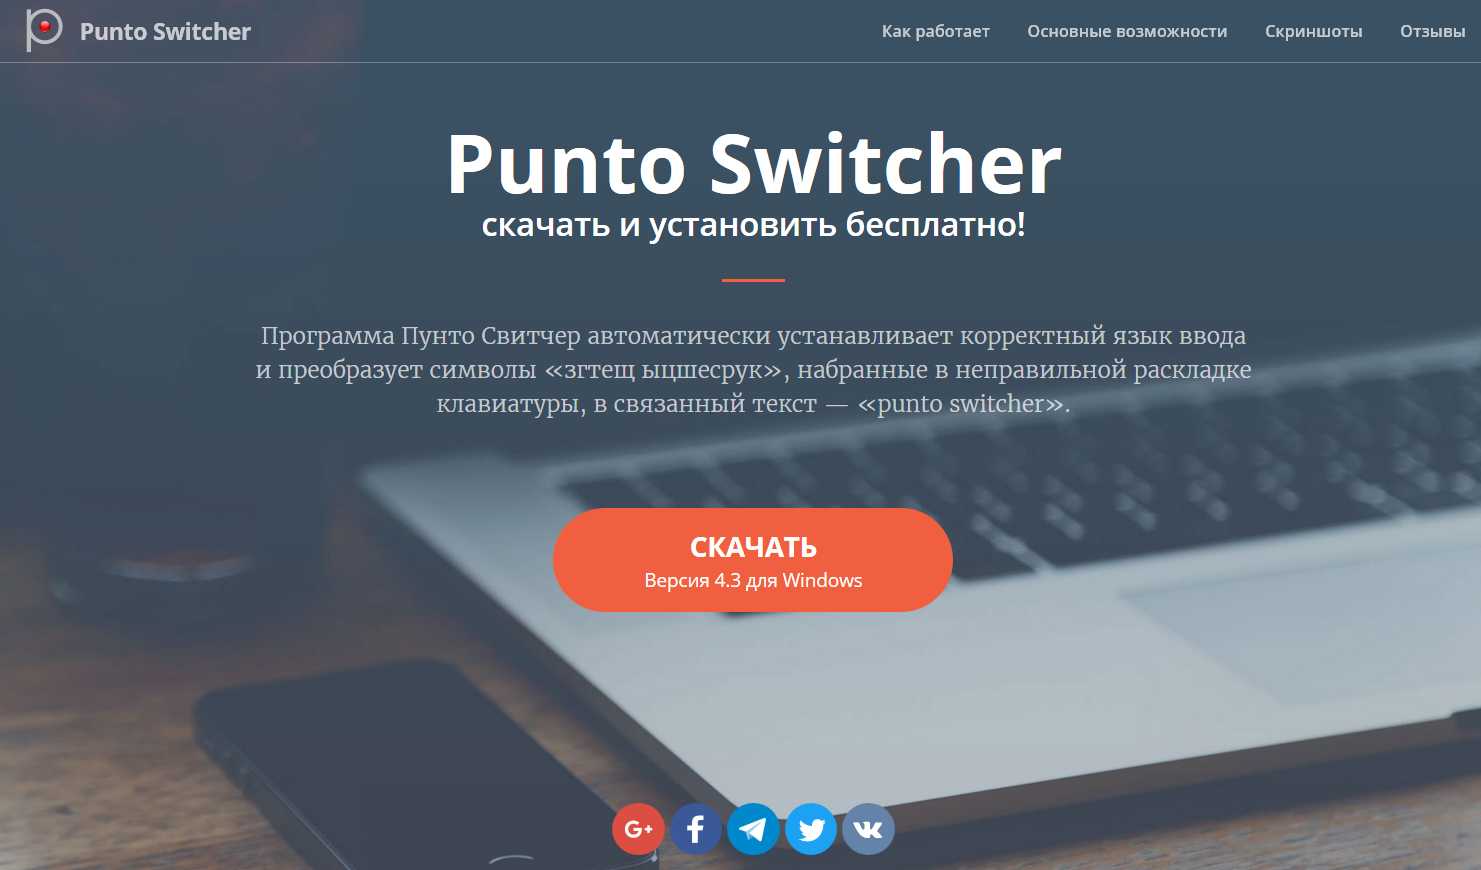 Punto switcher — автоматическое переключение клавиатуры